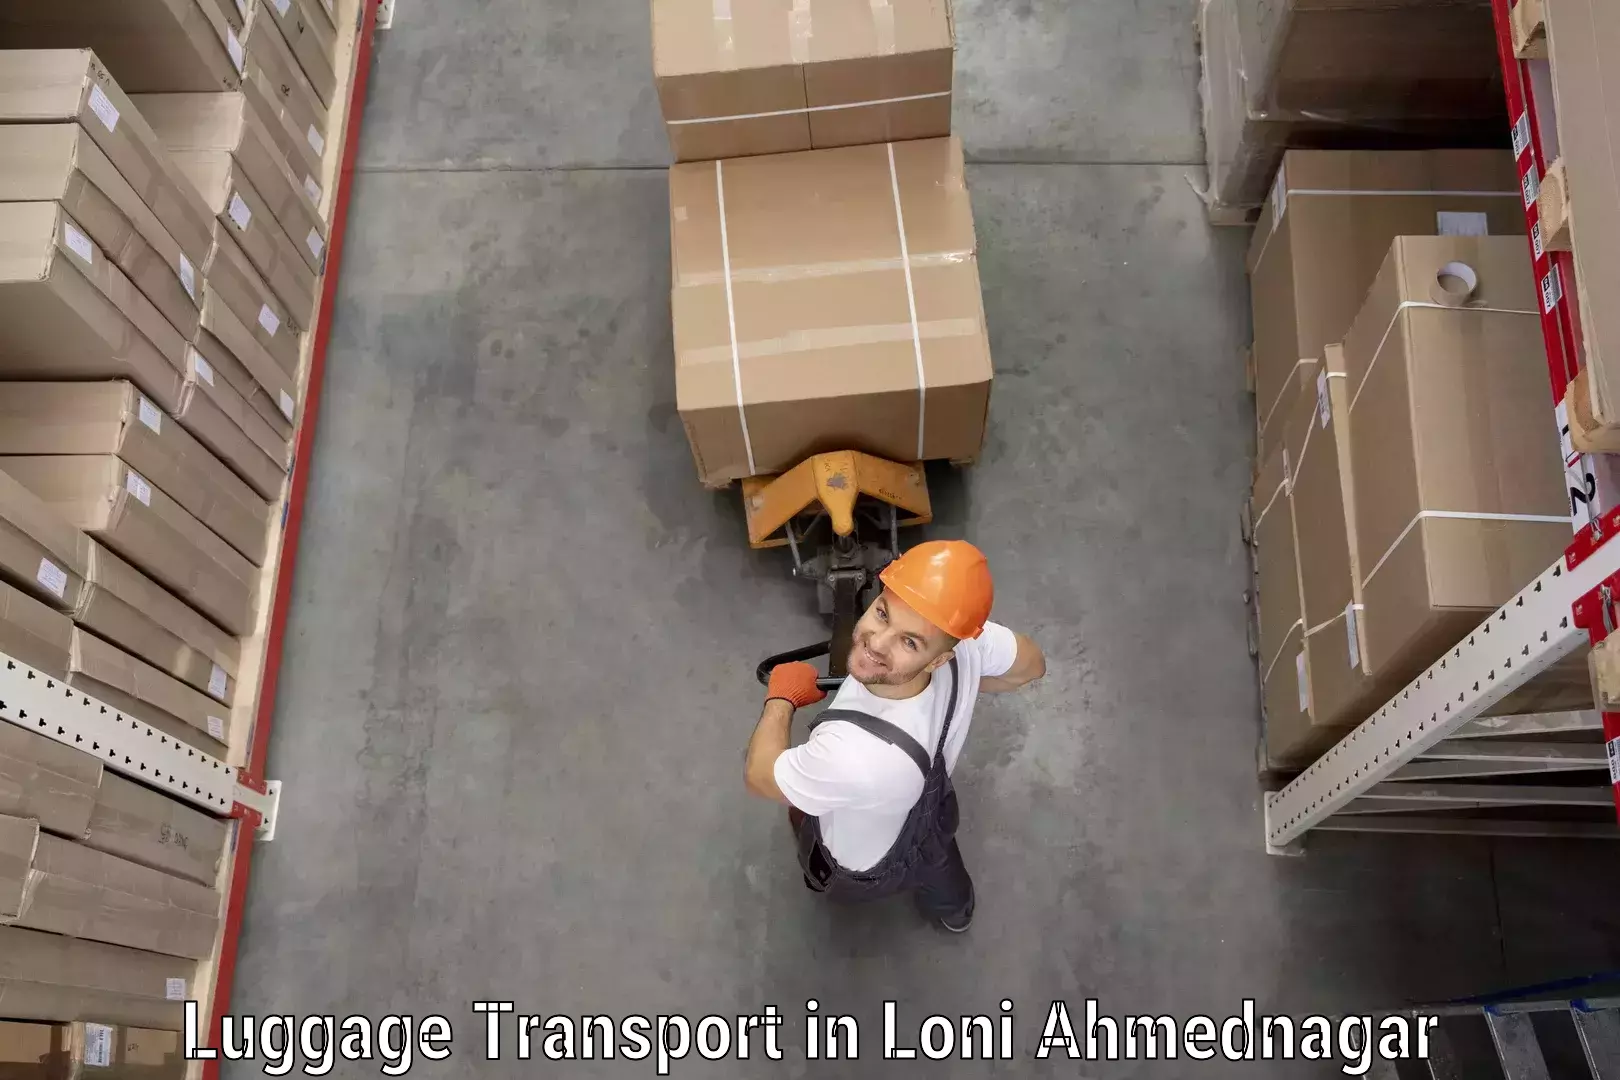 Luggage transport service in Loni Ahmednagar